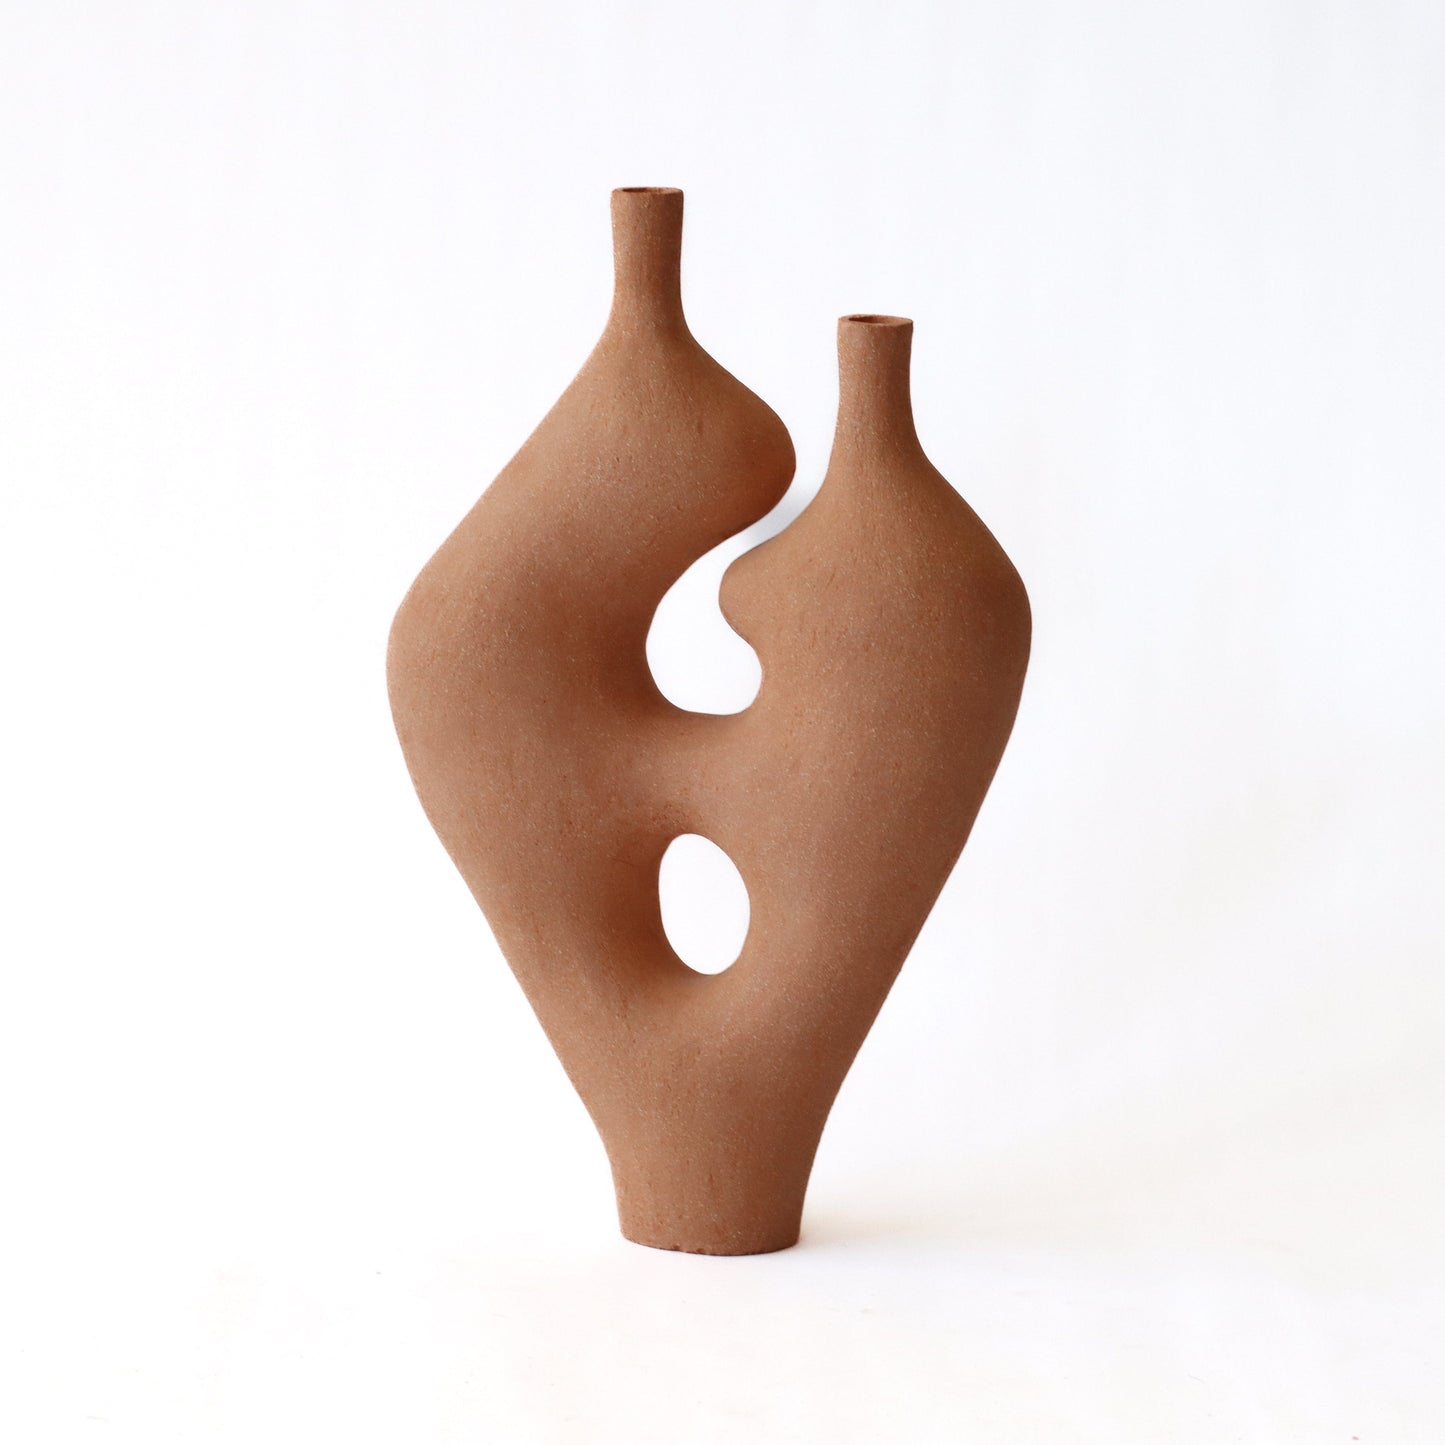 Form Vase #40 by Whitney Bender